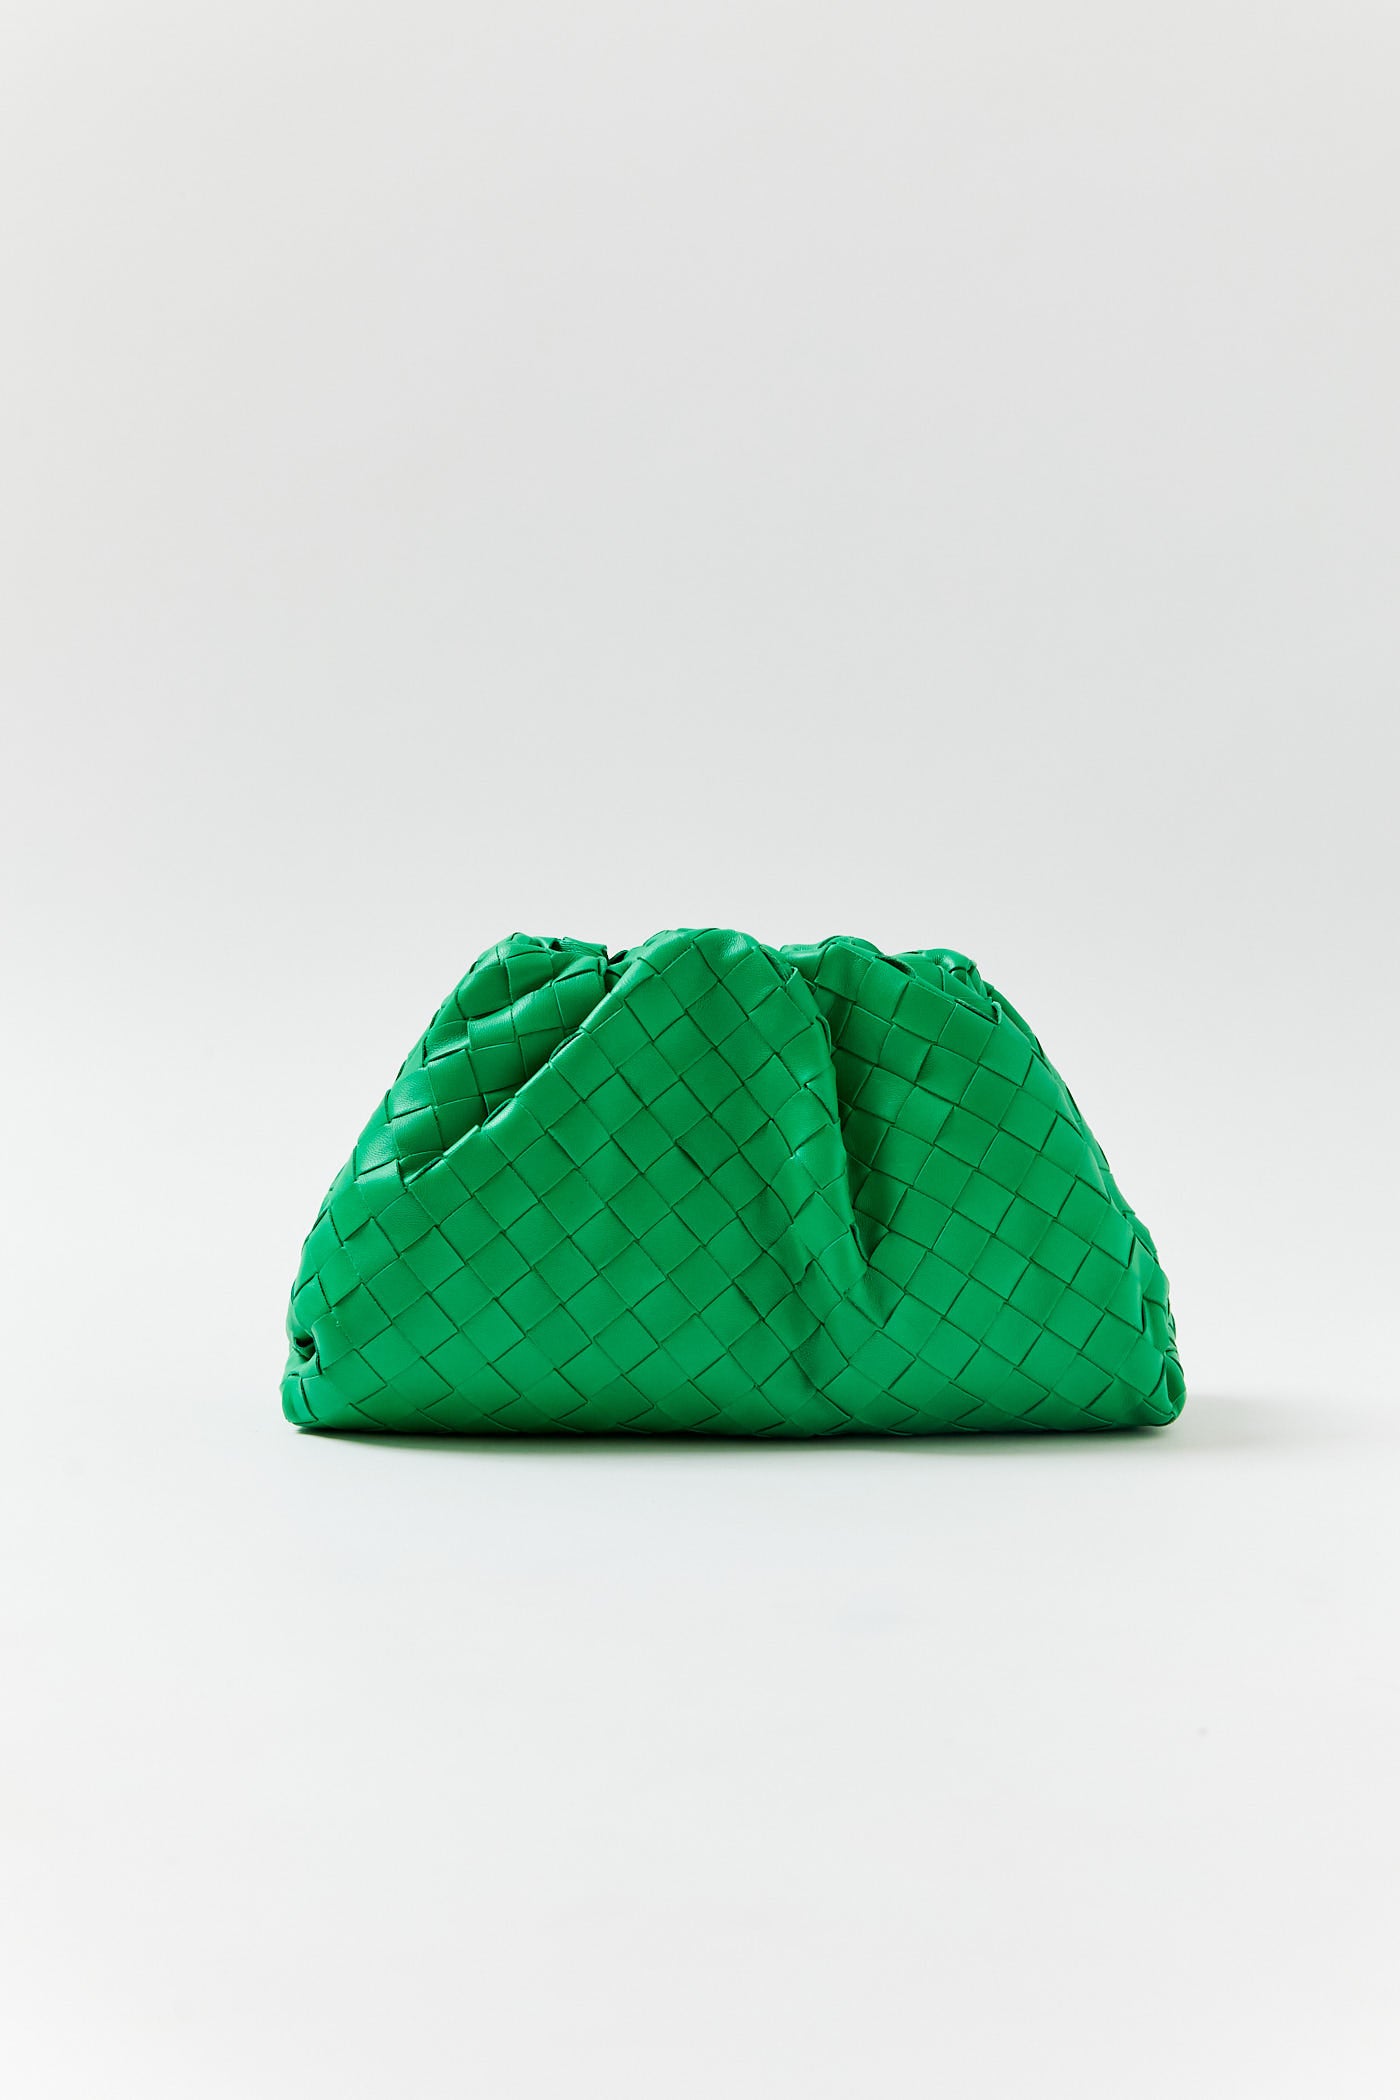 Bottega Veneta Green Leather Intrecciato Pouch Clutch